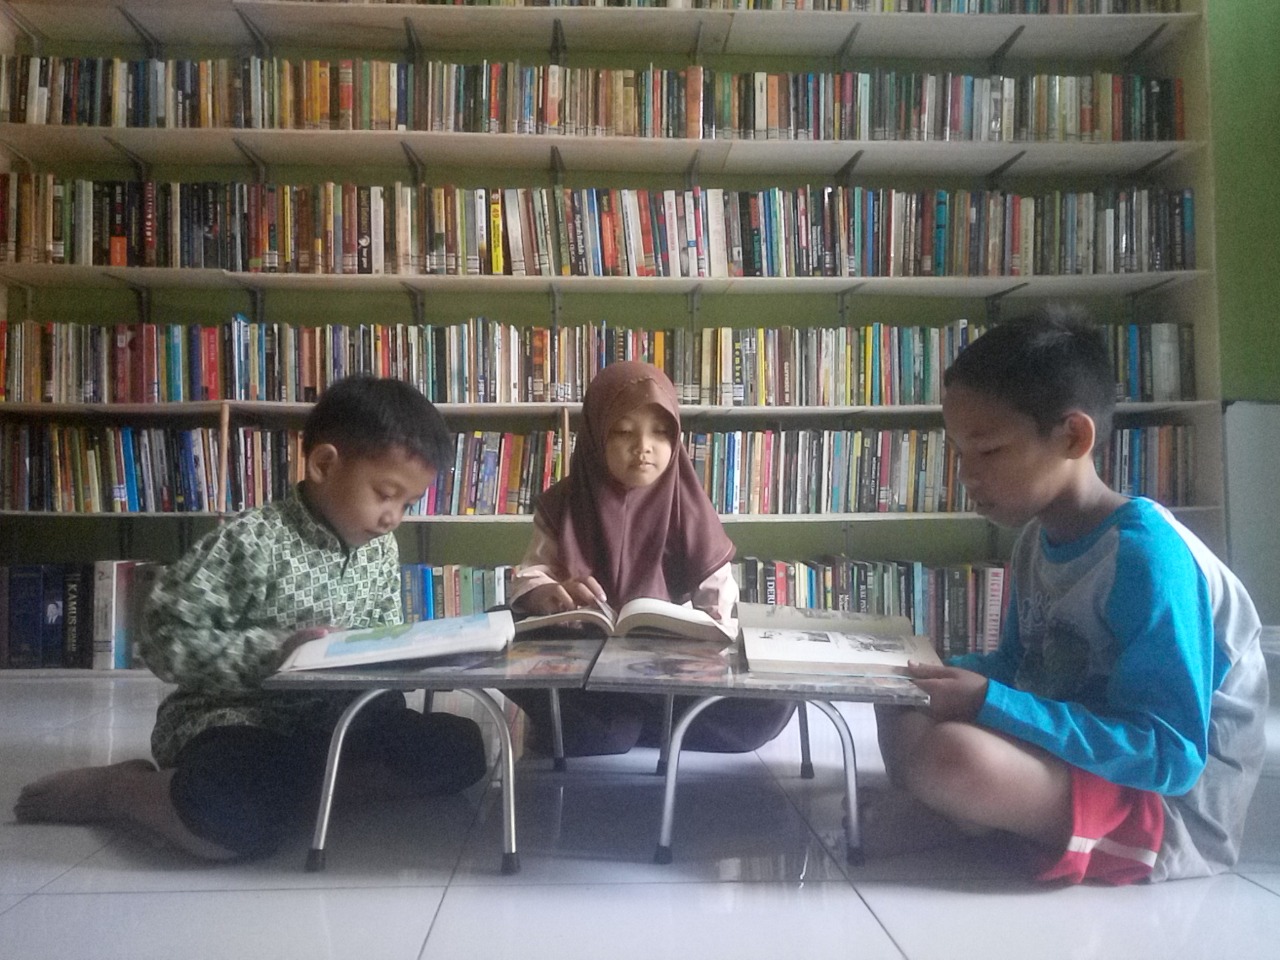 Perpustakaan S16 Tetap Buka untuk Dongkrak Minat Baca Masyarakat